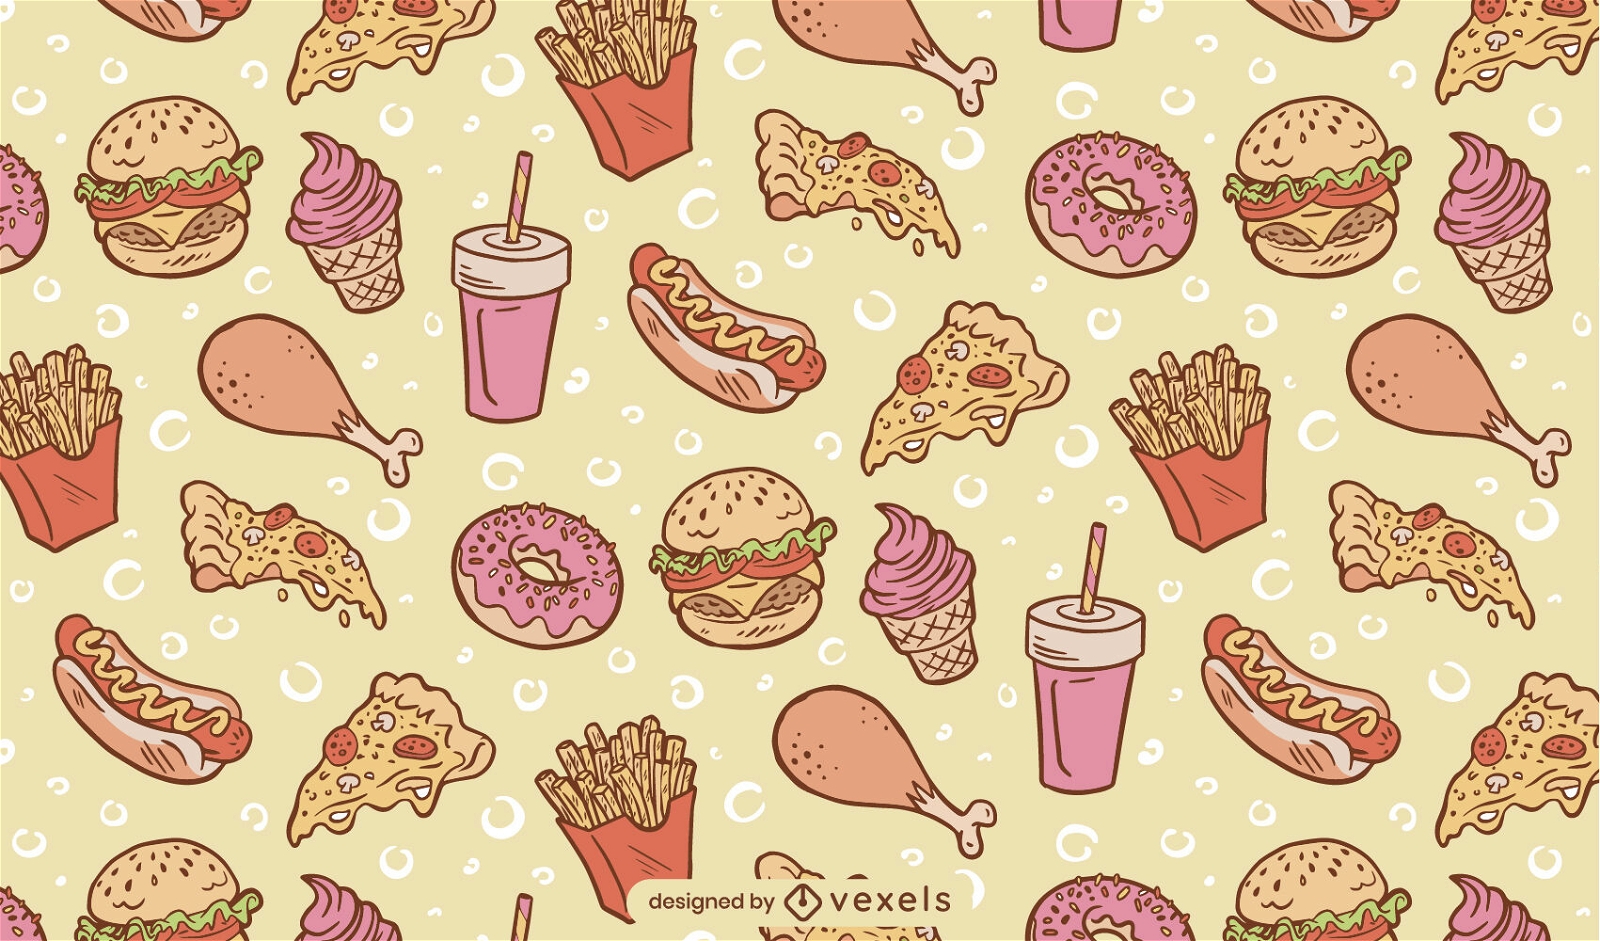 Fast food meals pattern design